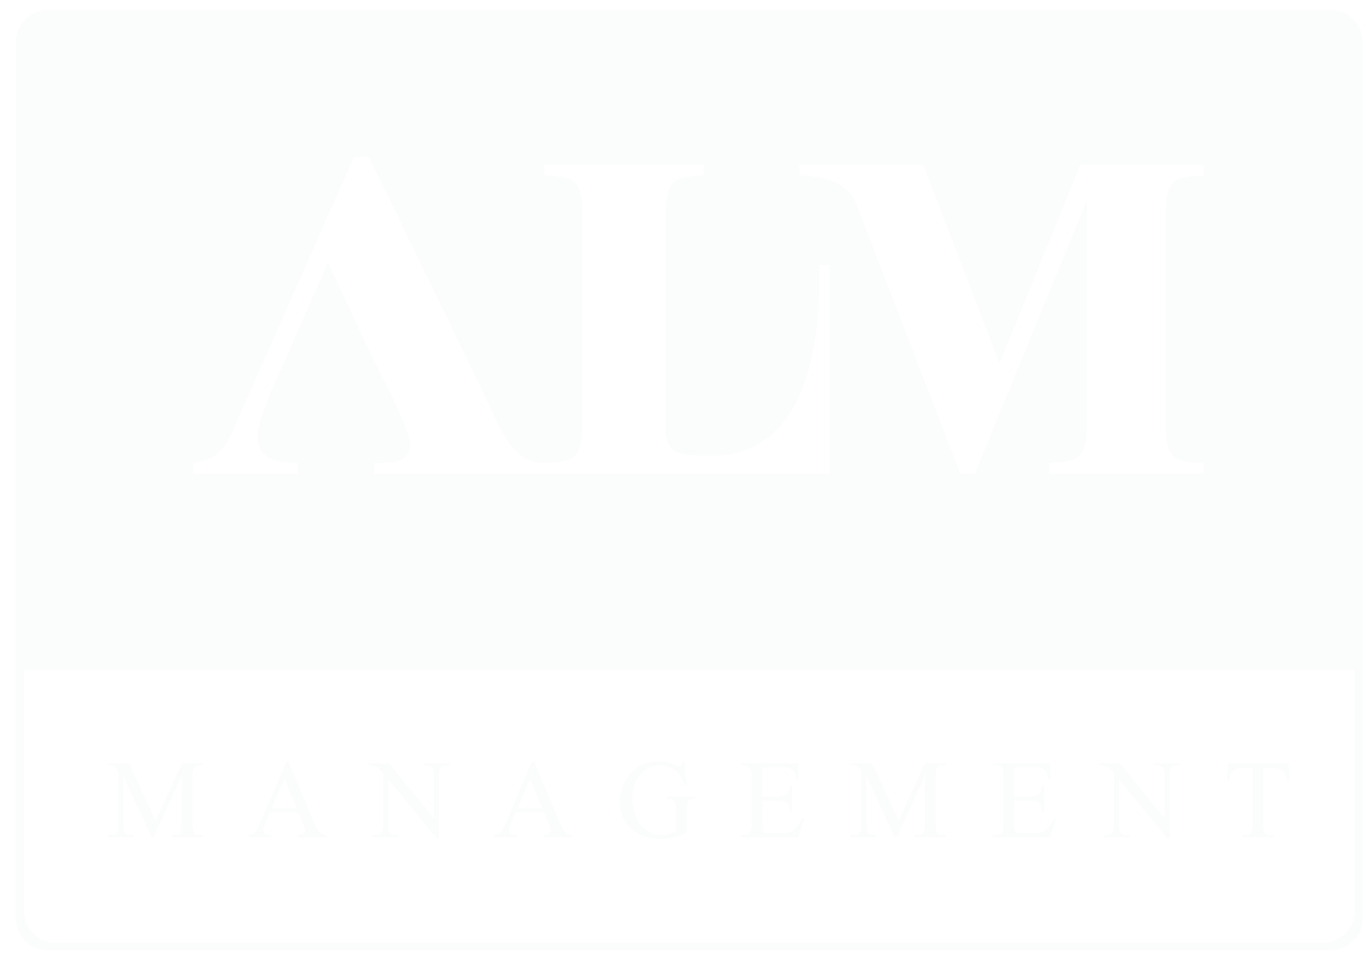 ALM Management